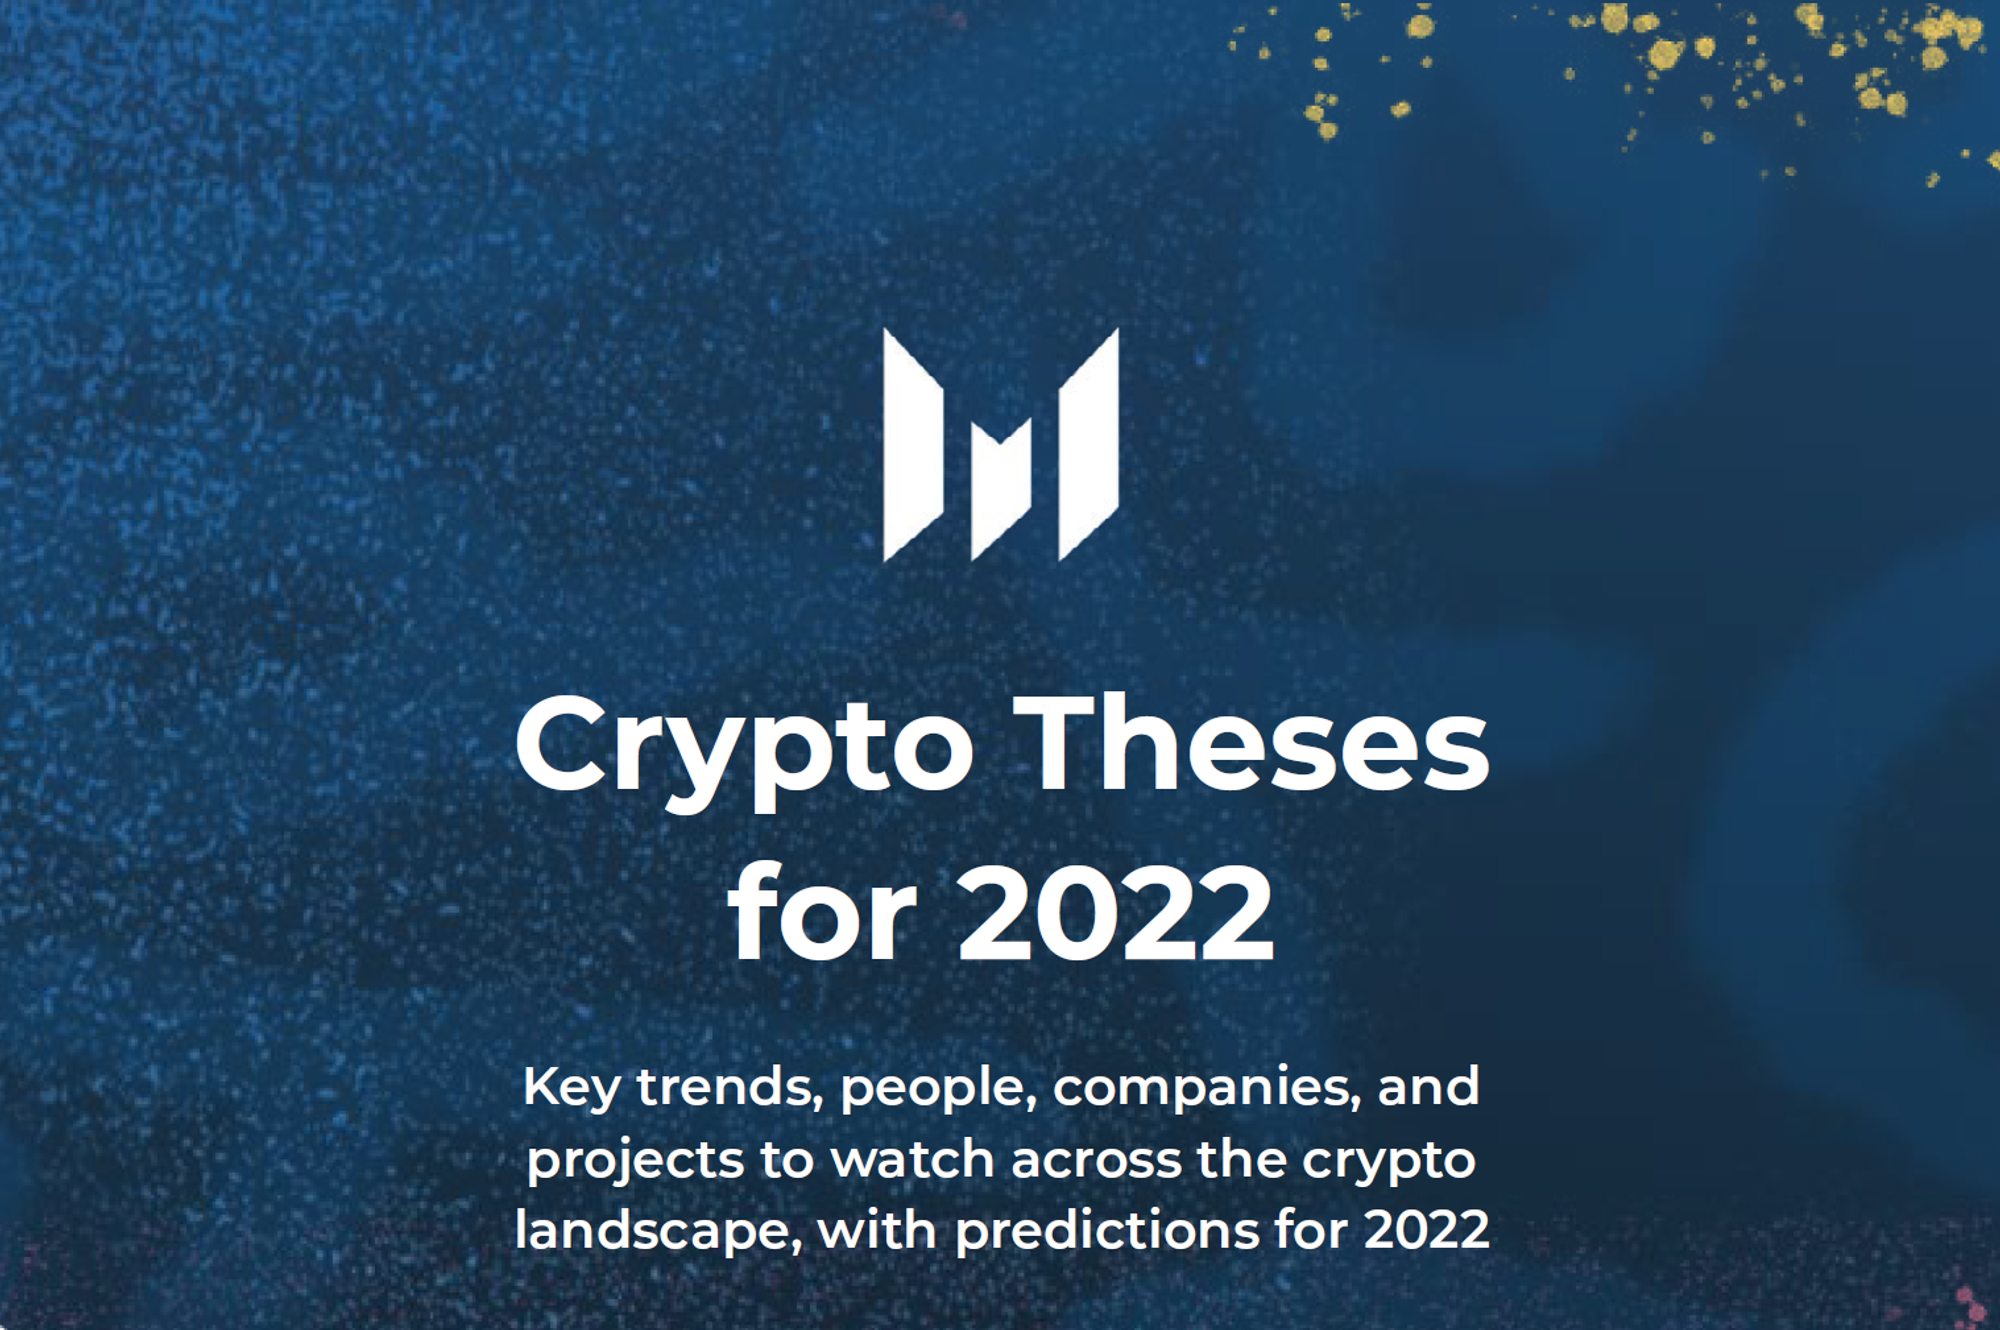 원문 다운로드: https://messari.io/crypto-theses-for-2022